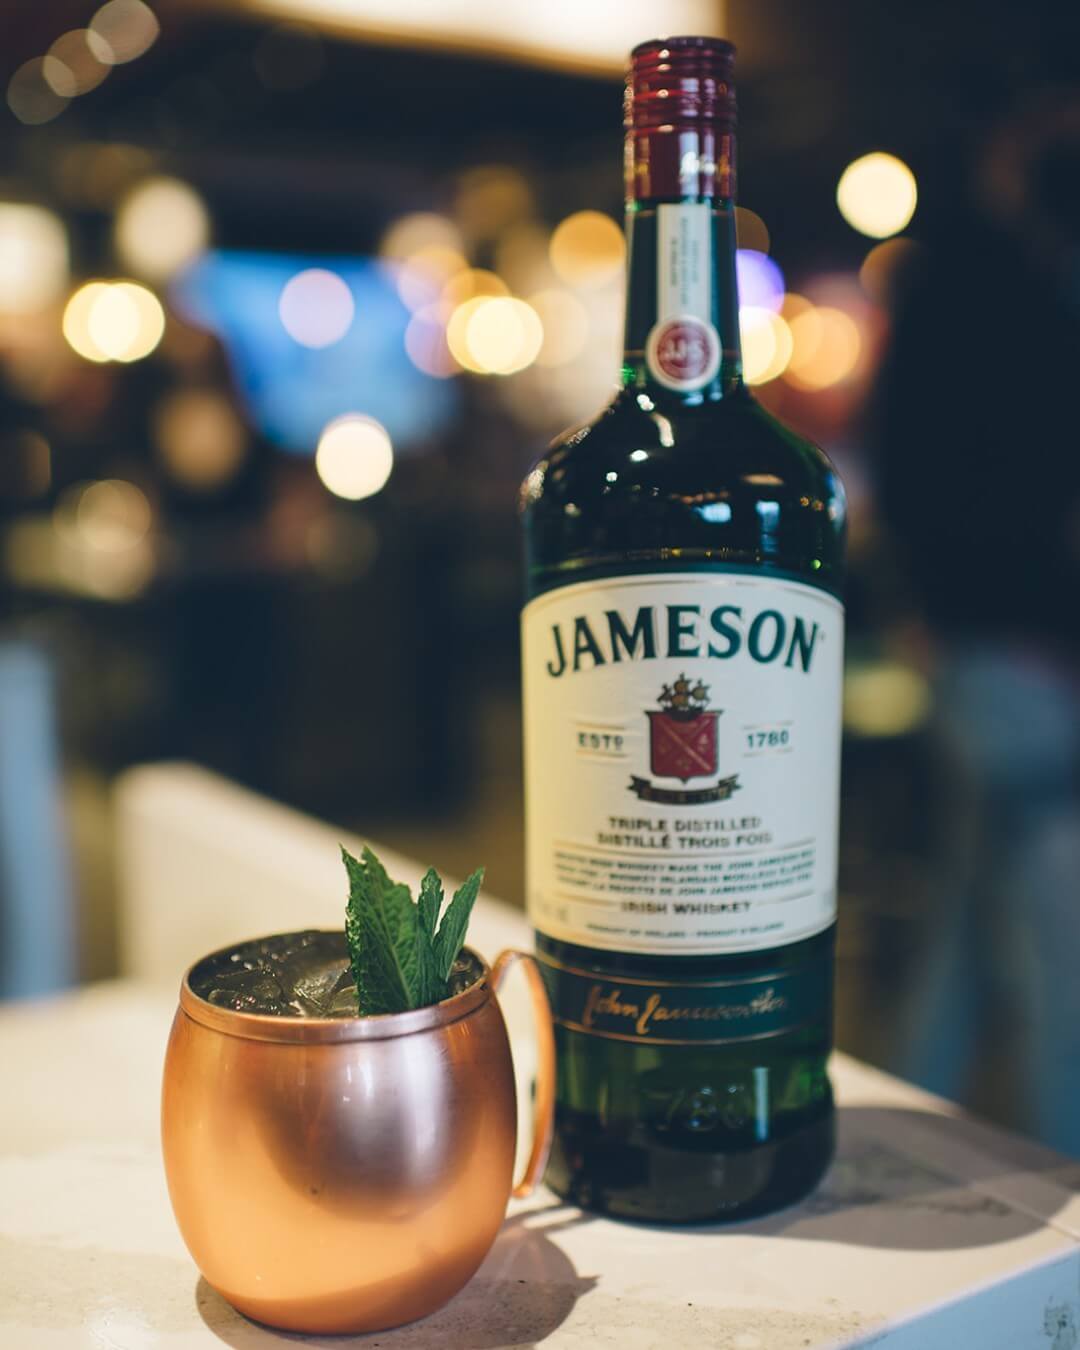 Jameson - Whisky cho quý cô ngọt ngào